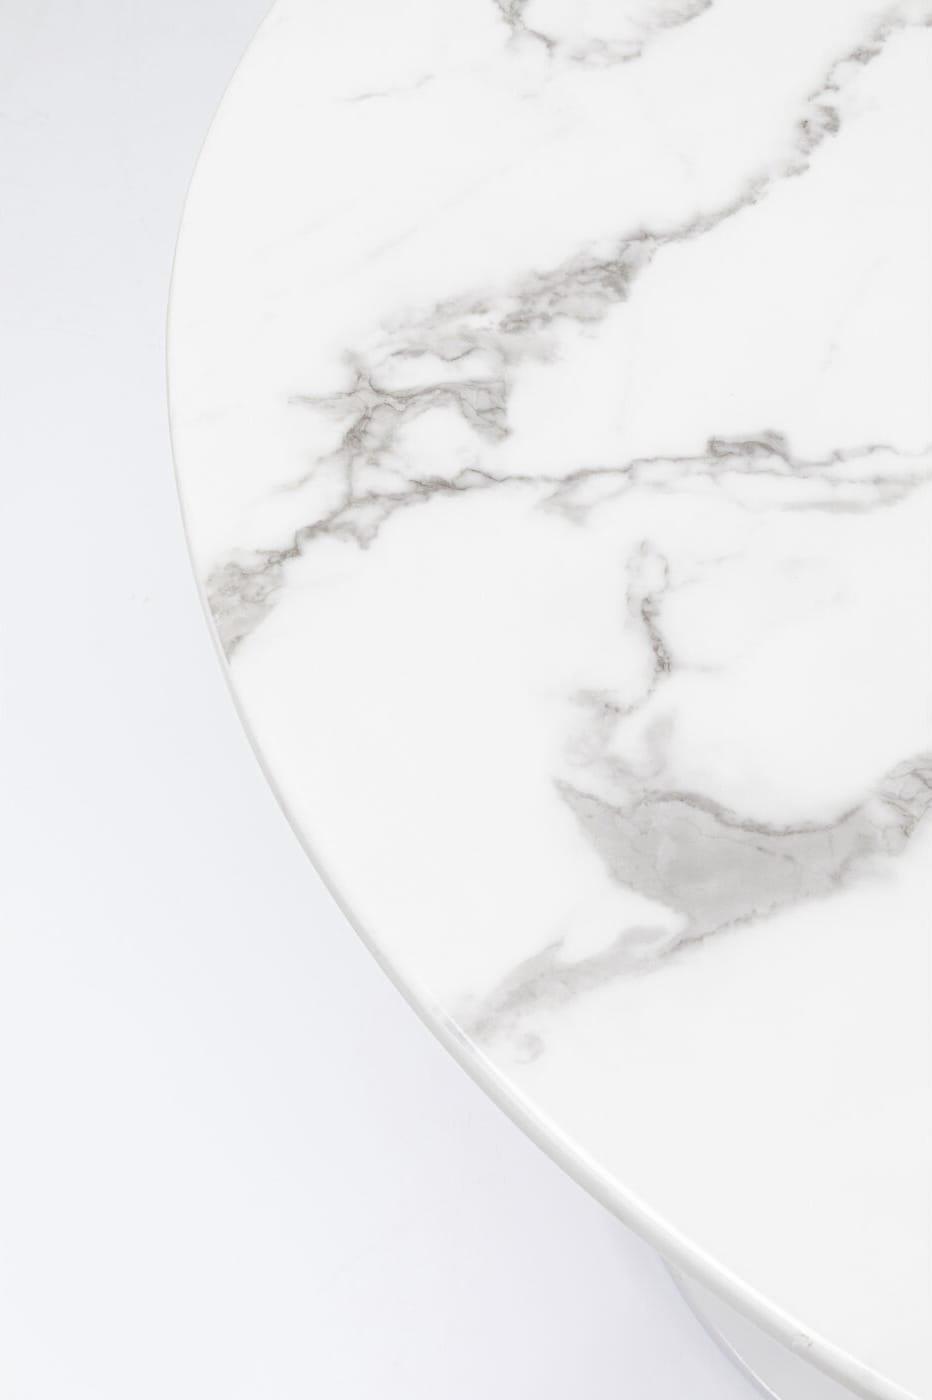 KARE Design Tisch Veneto Marmor weiss rund 110  